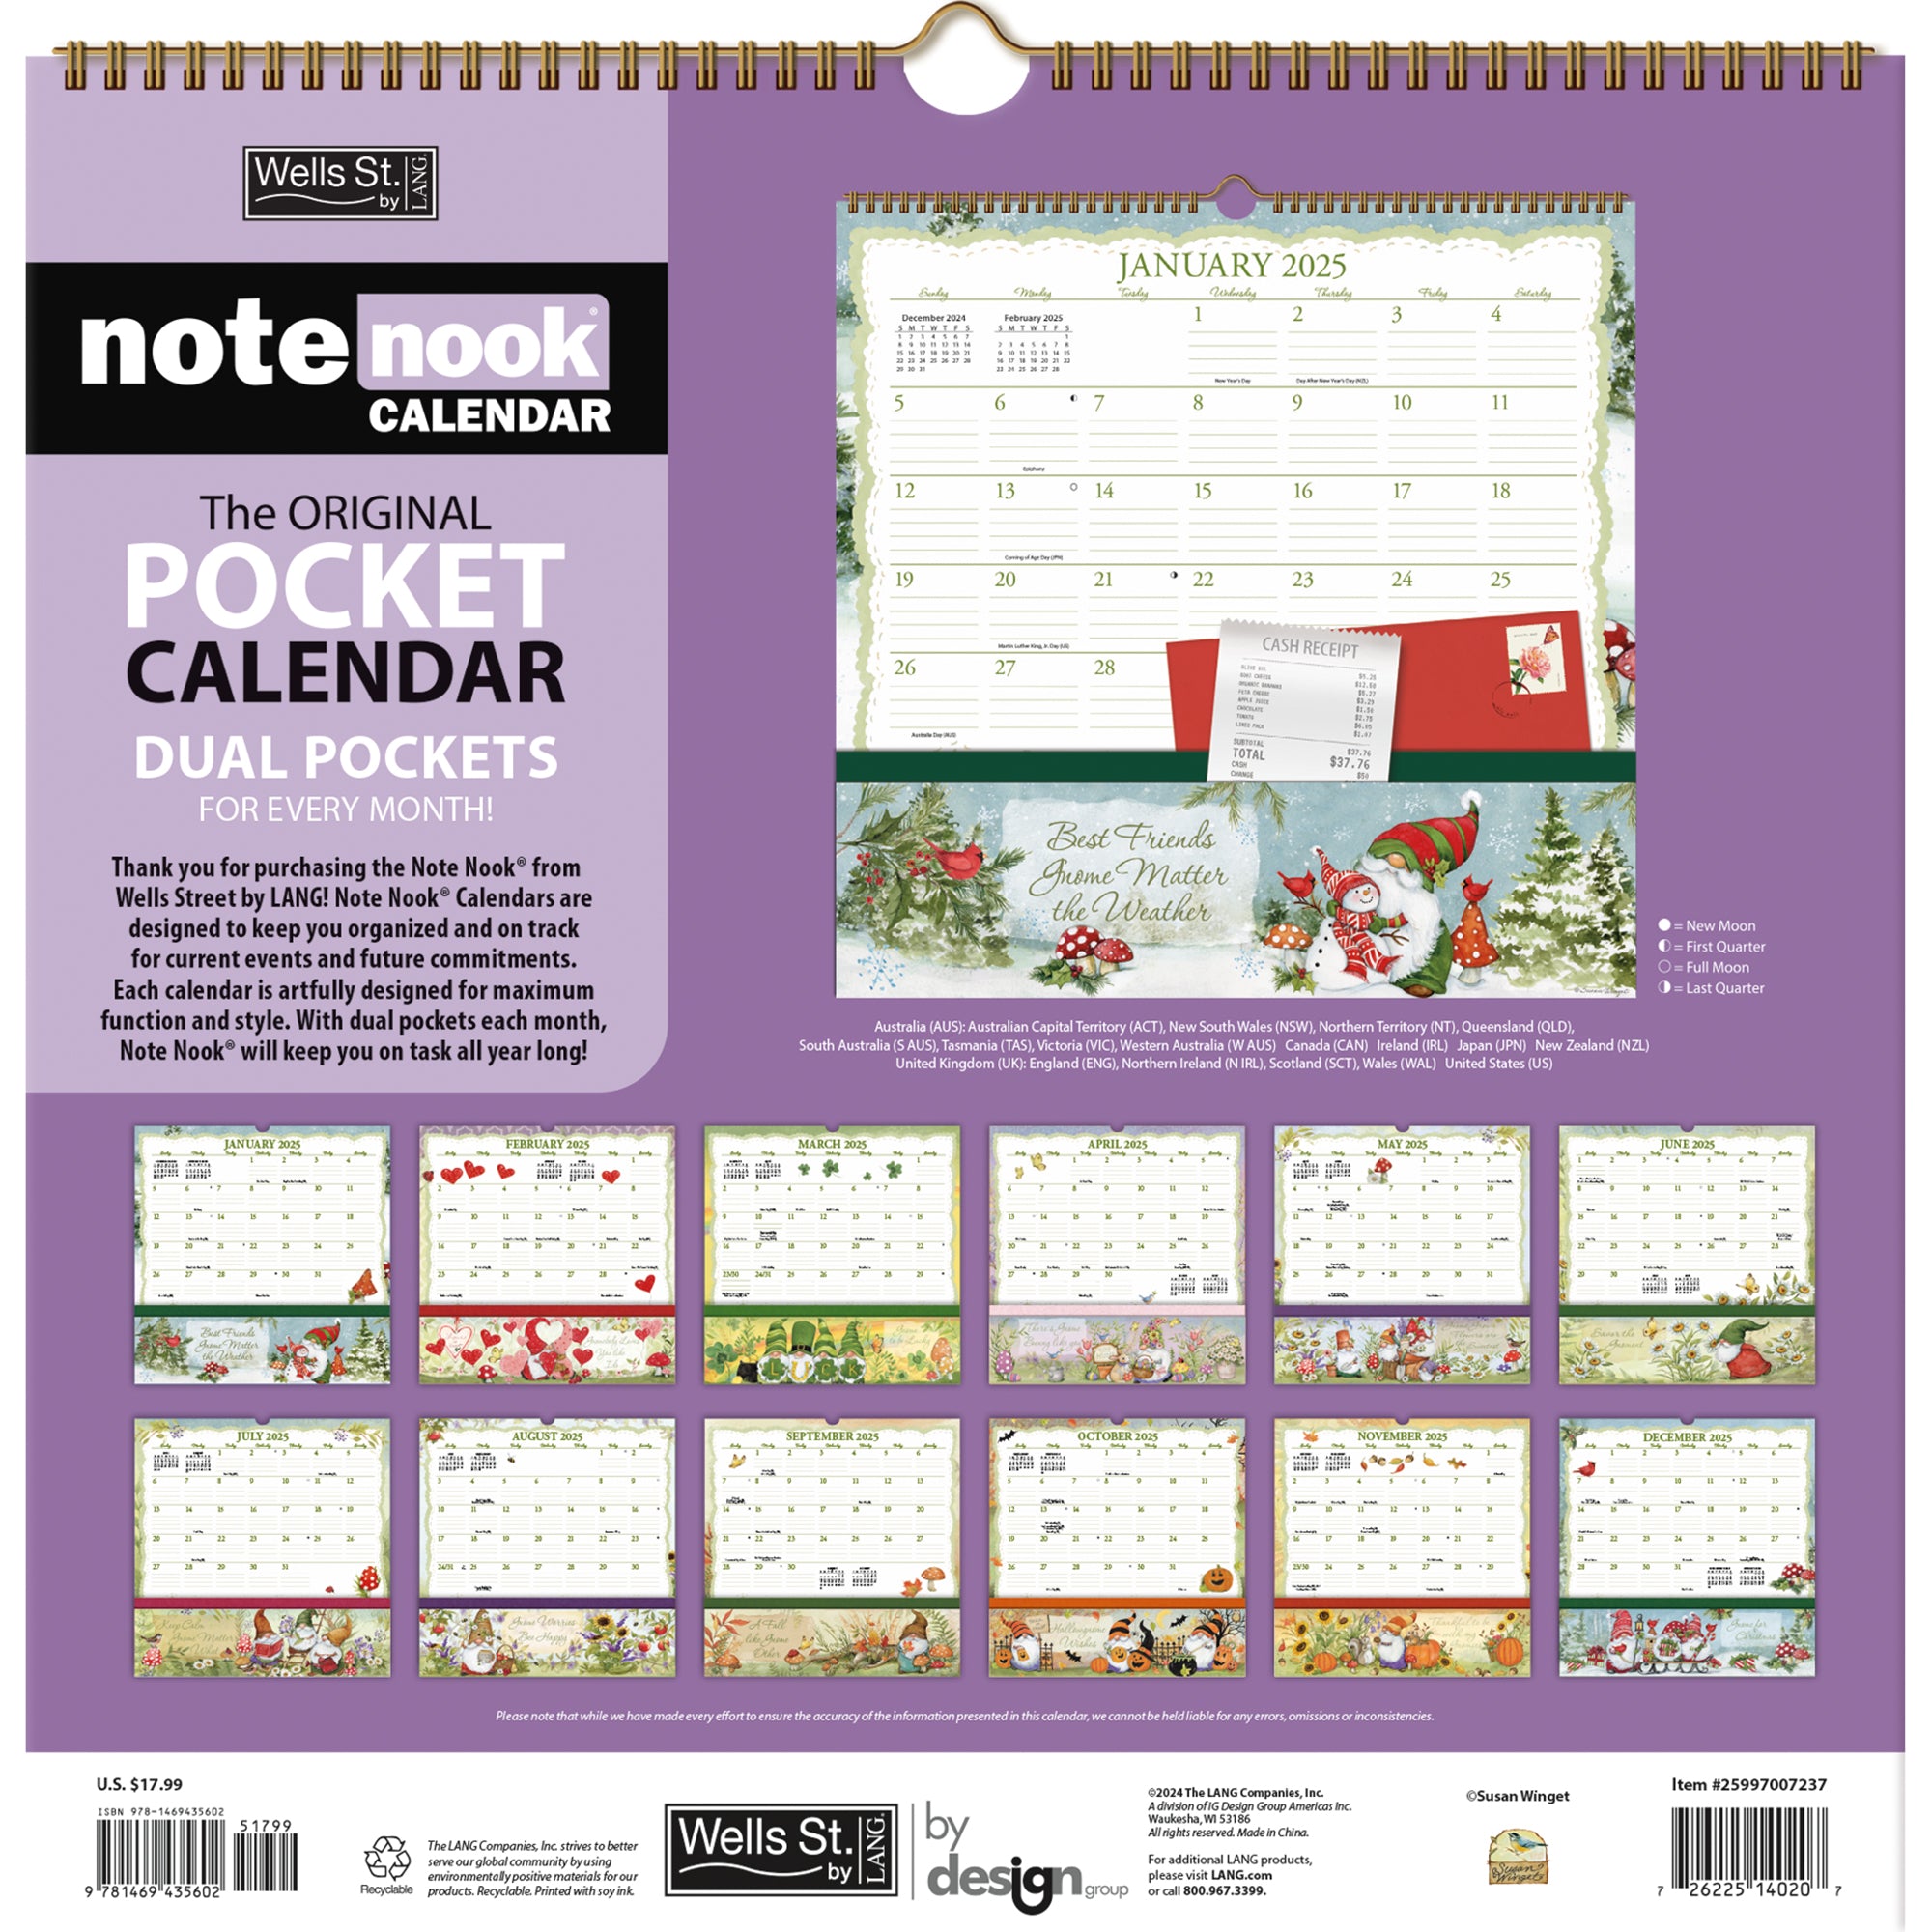 2025 Gnomes - LANG Note Nook Square Wall Calendar